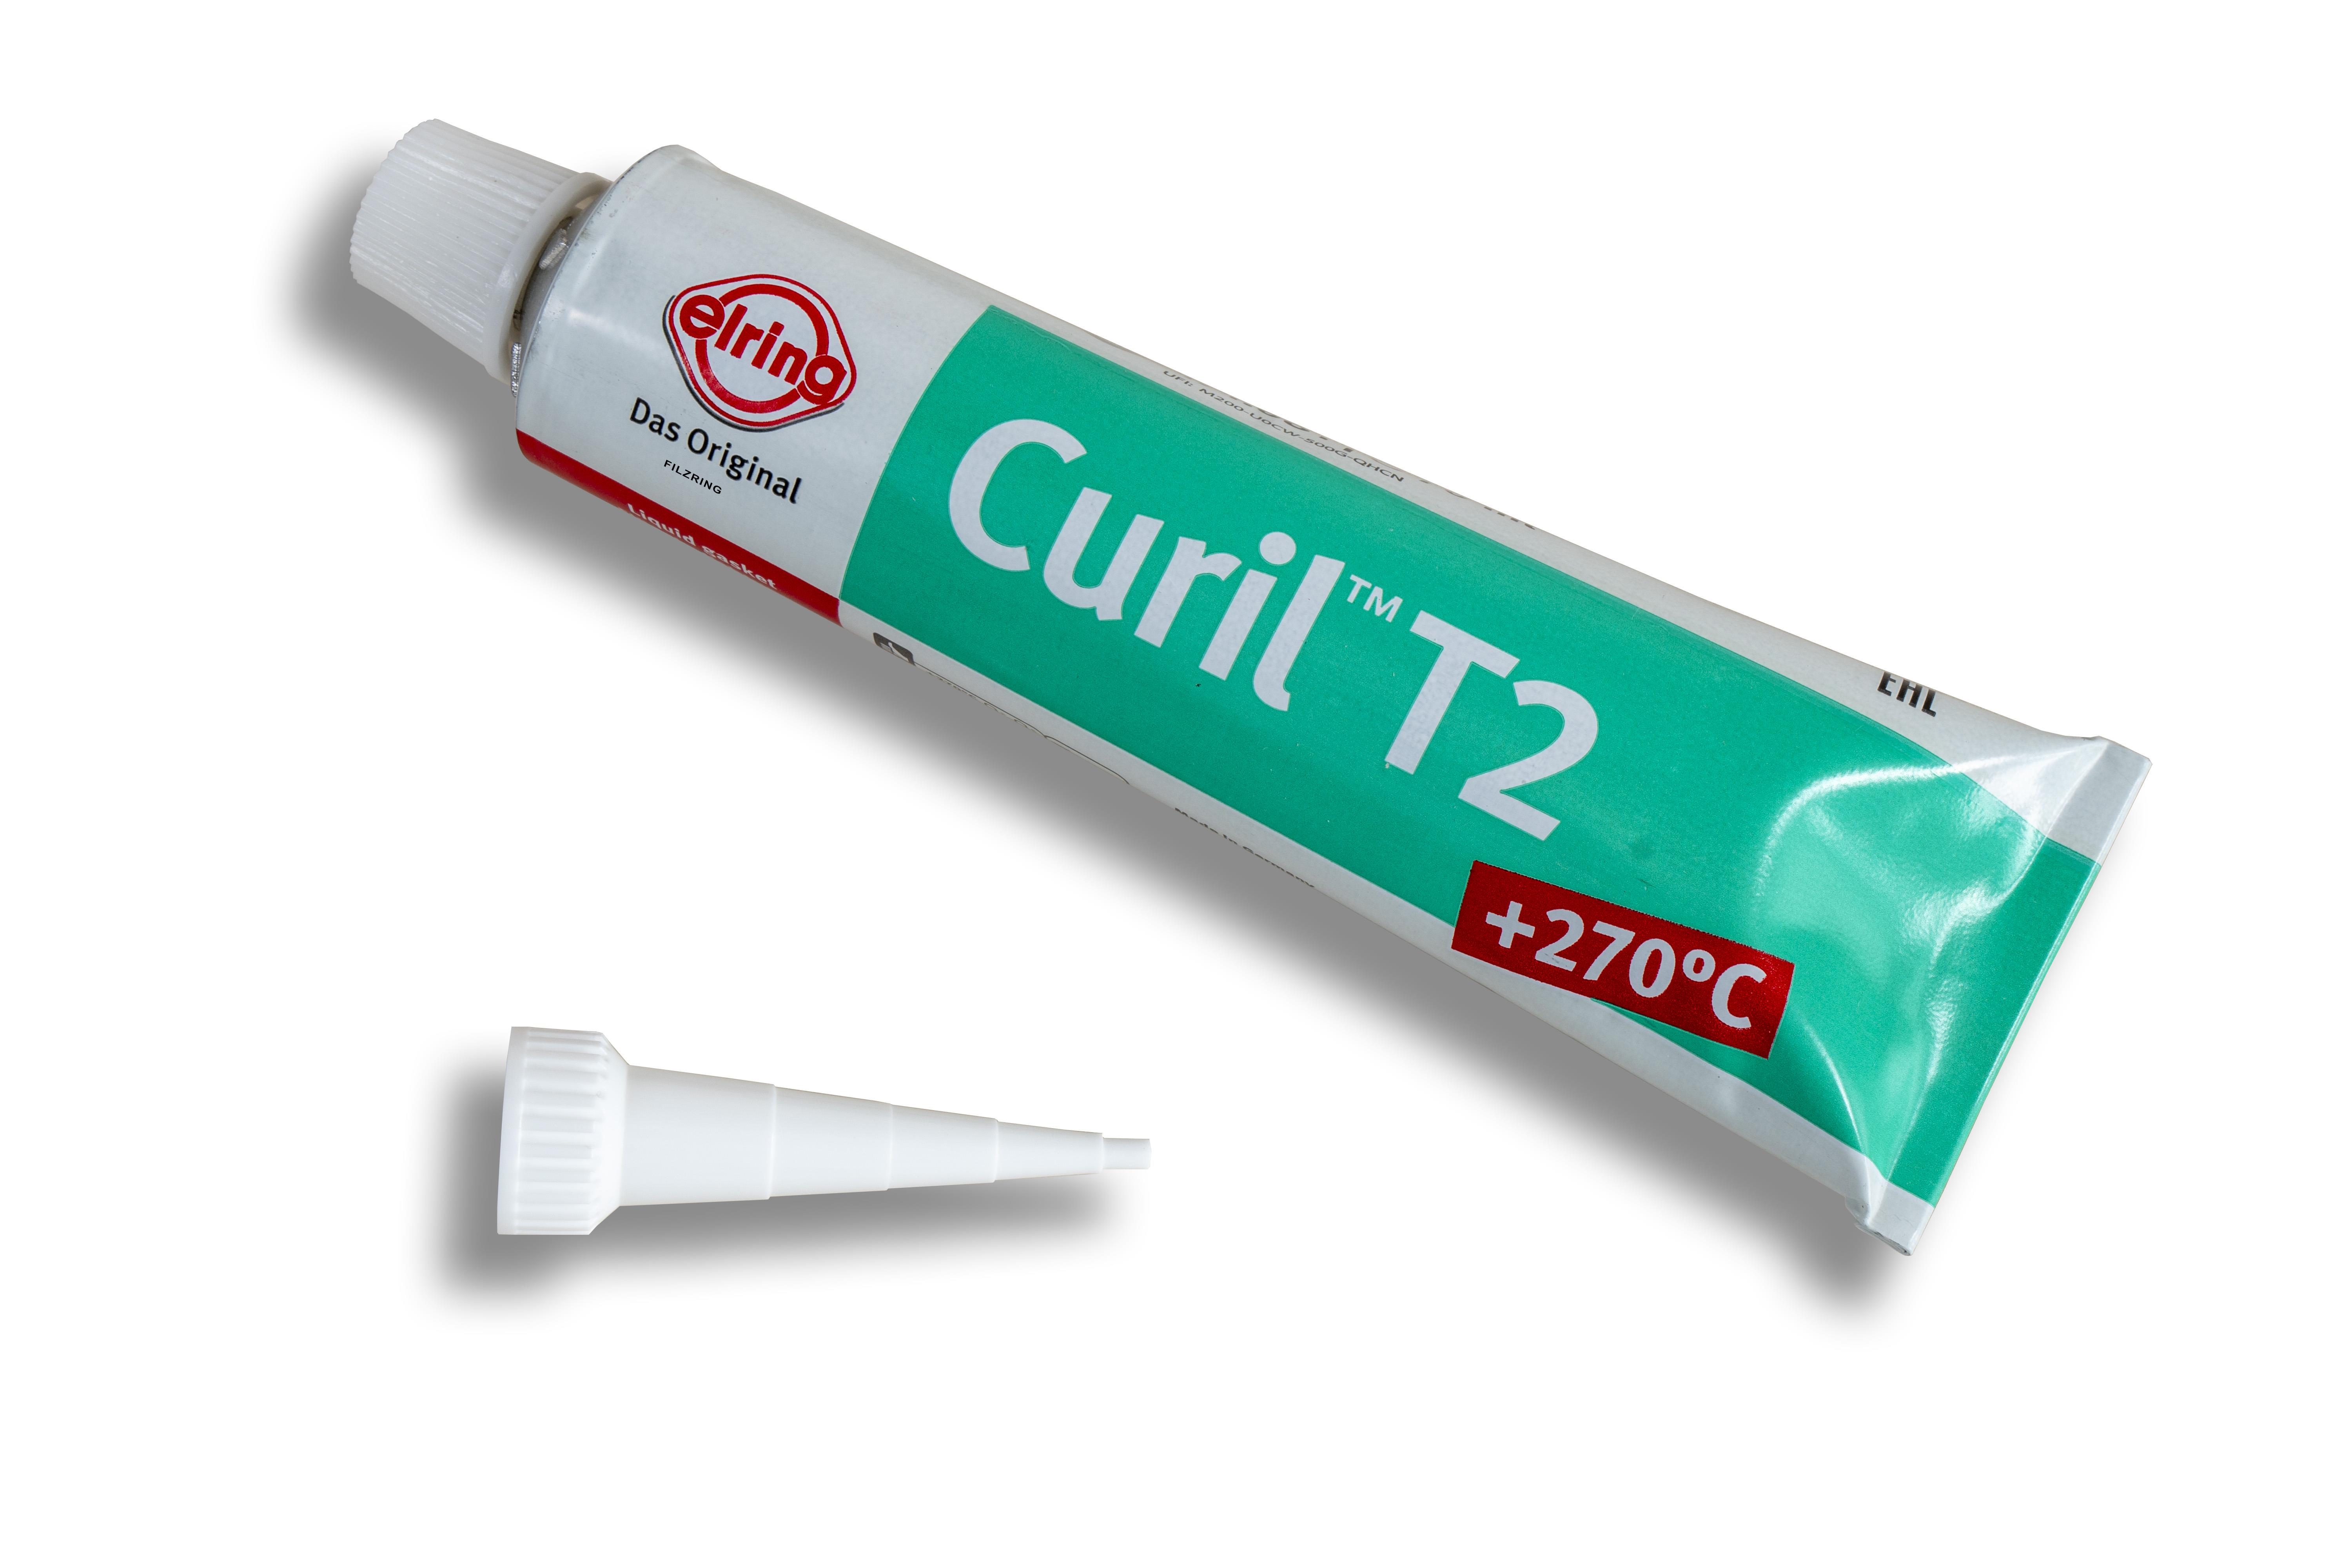 Dichtmasse (Curil T2) dauerplastisch - Tube 70ml